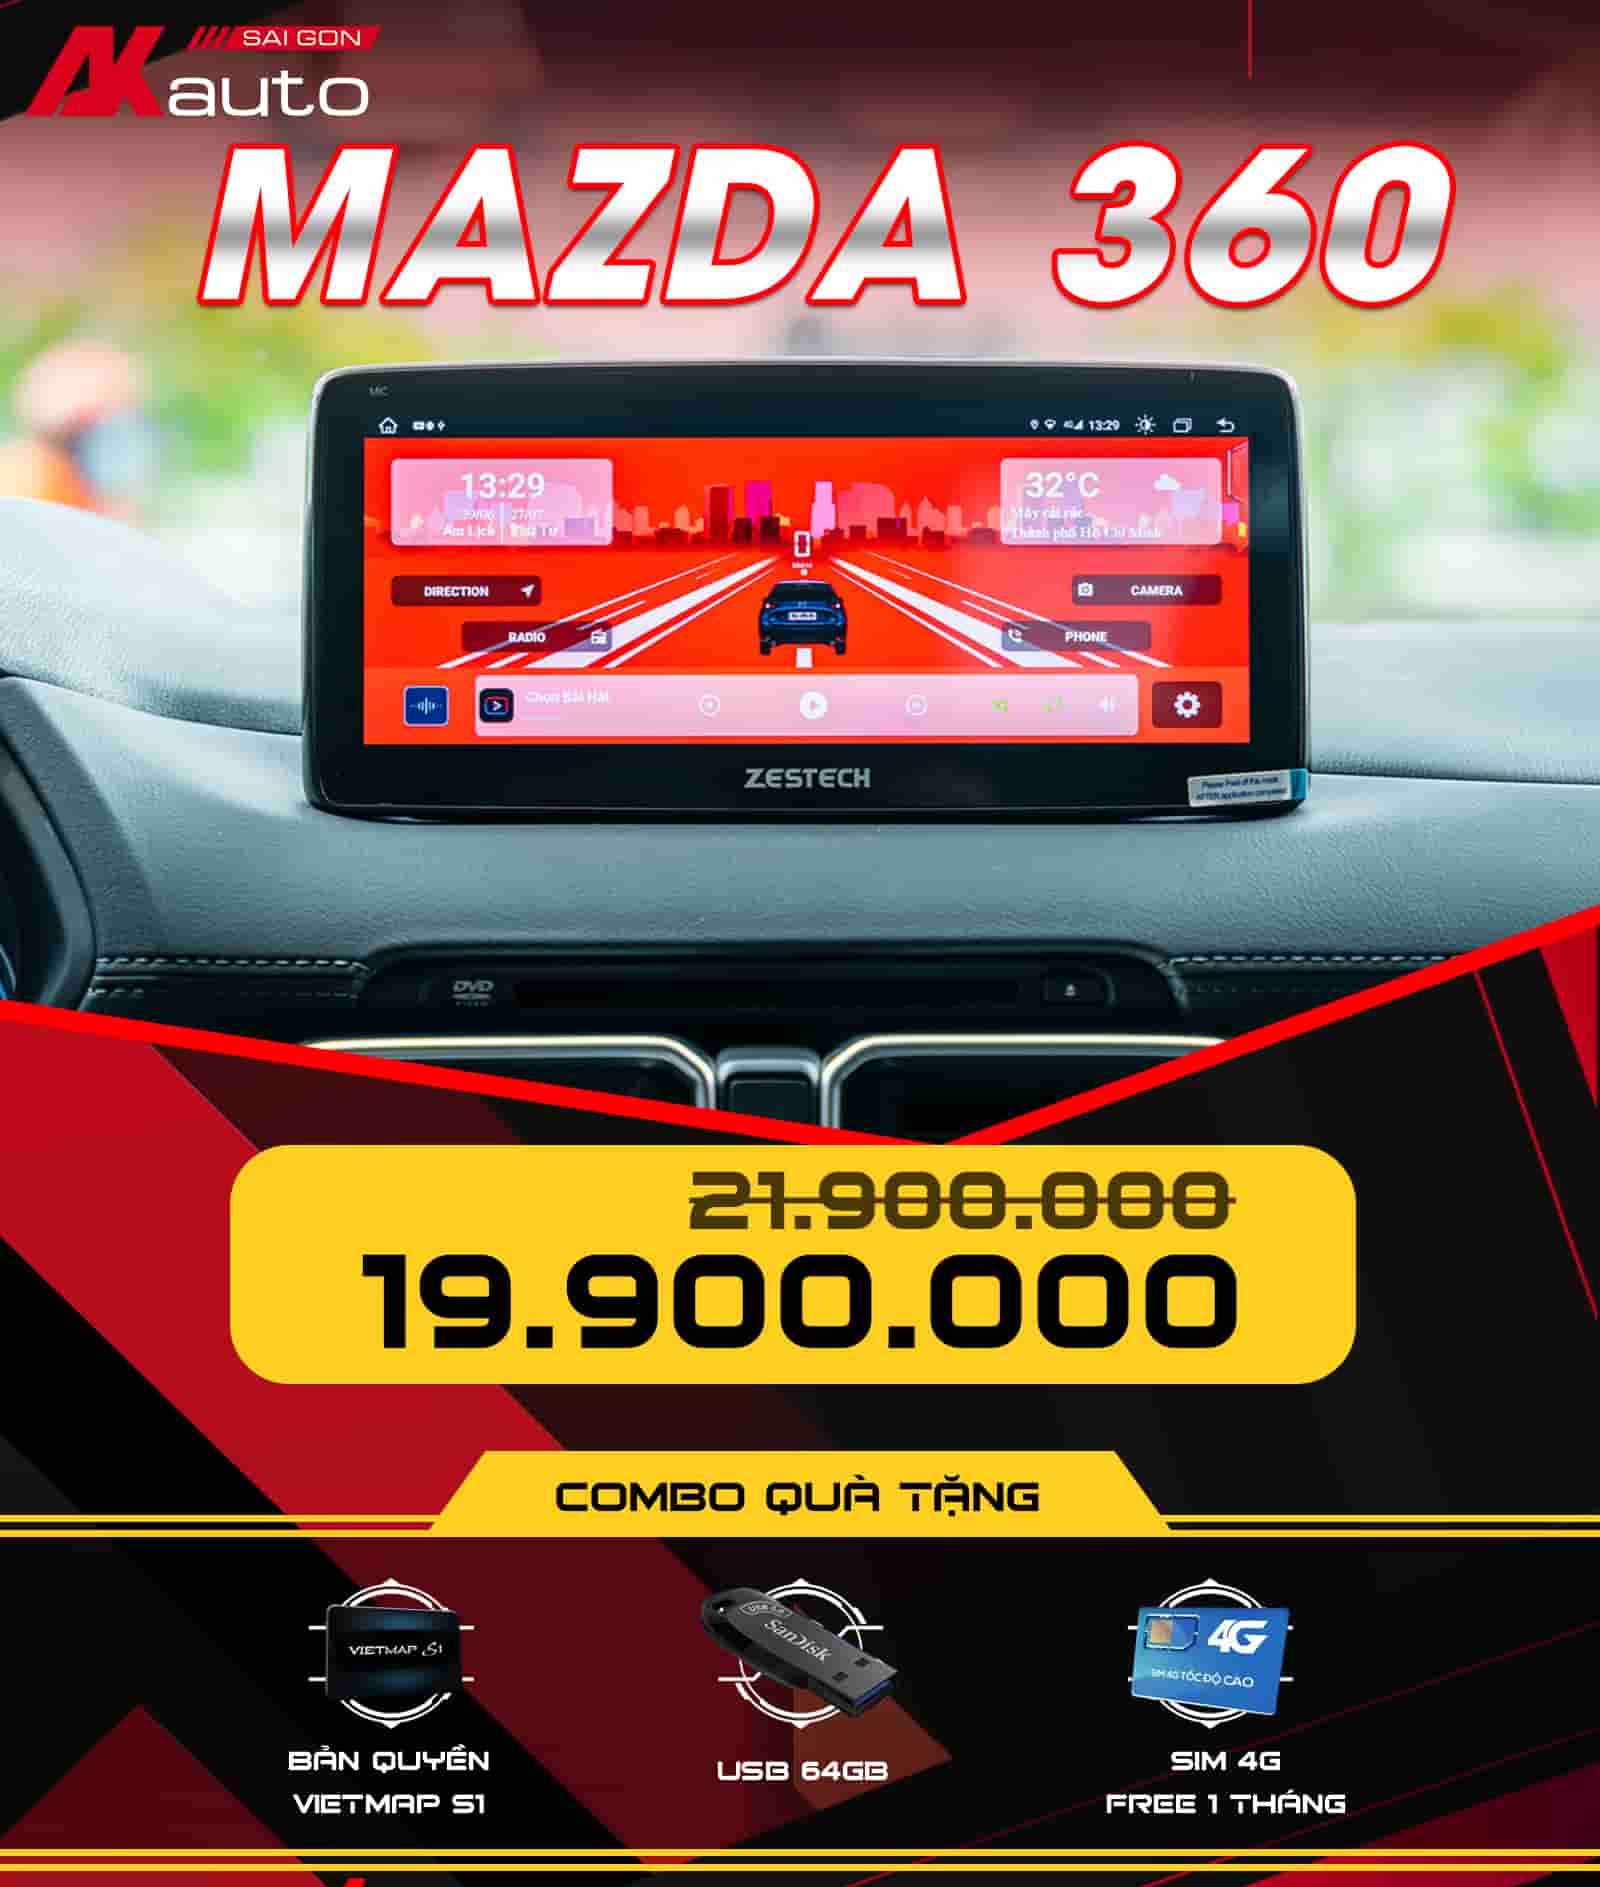 Giá bán và quà tặng màn hình Mazda MLK 360